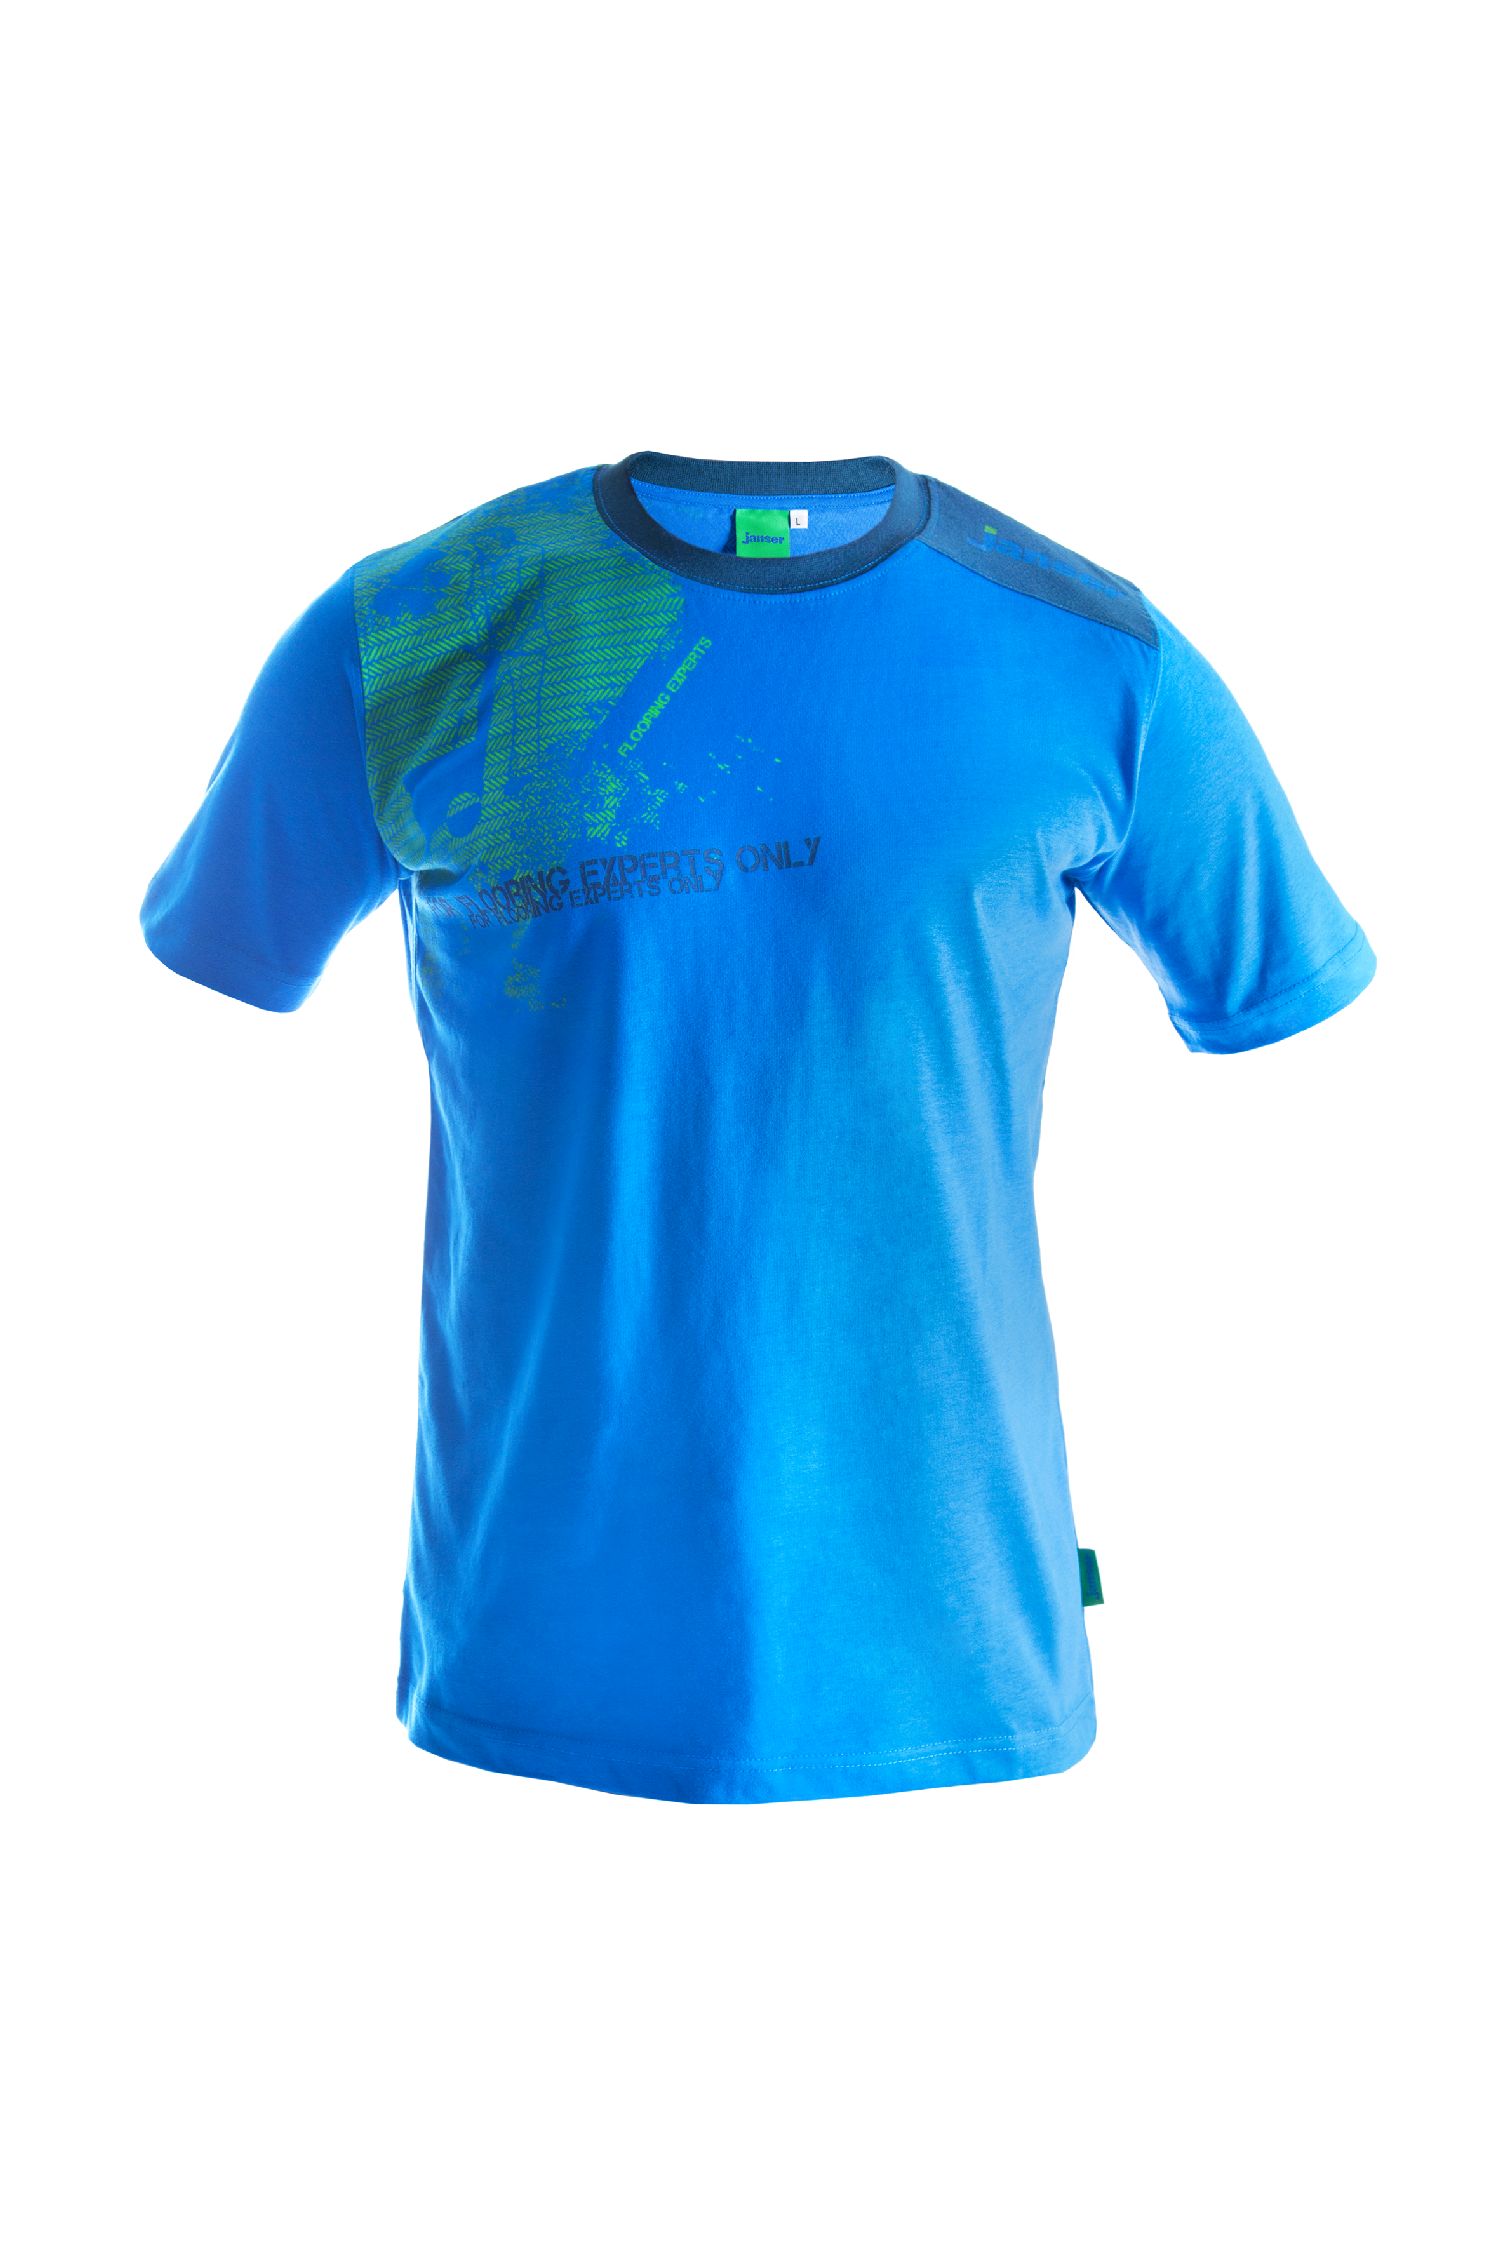 T-Shirt Janser, Gr.XL blau/grün